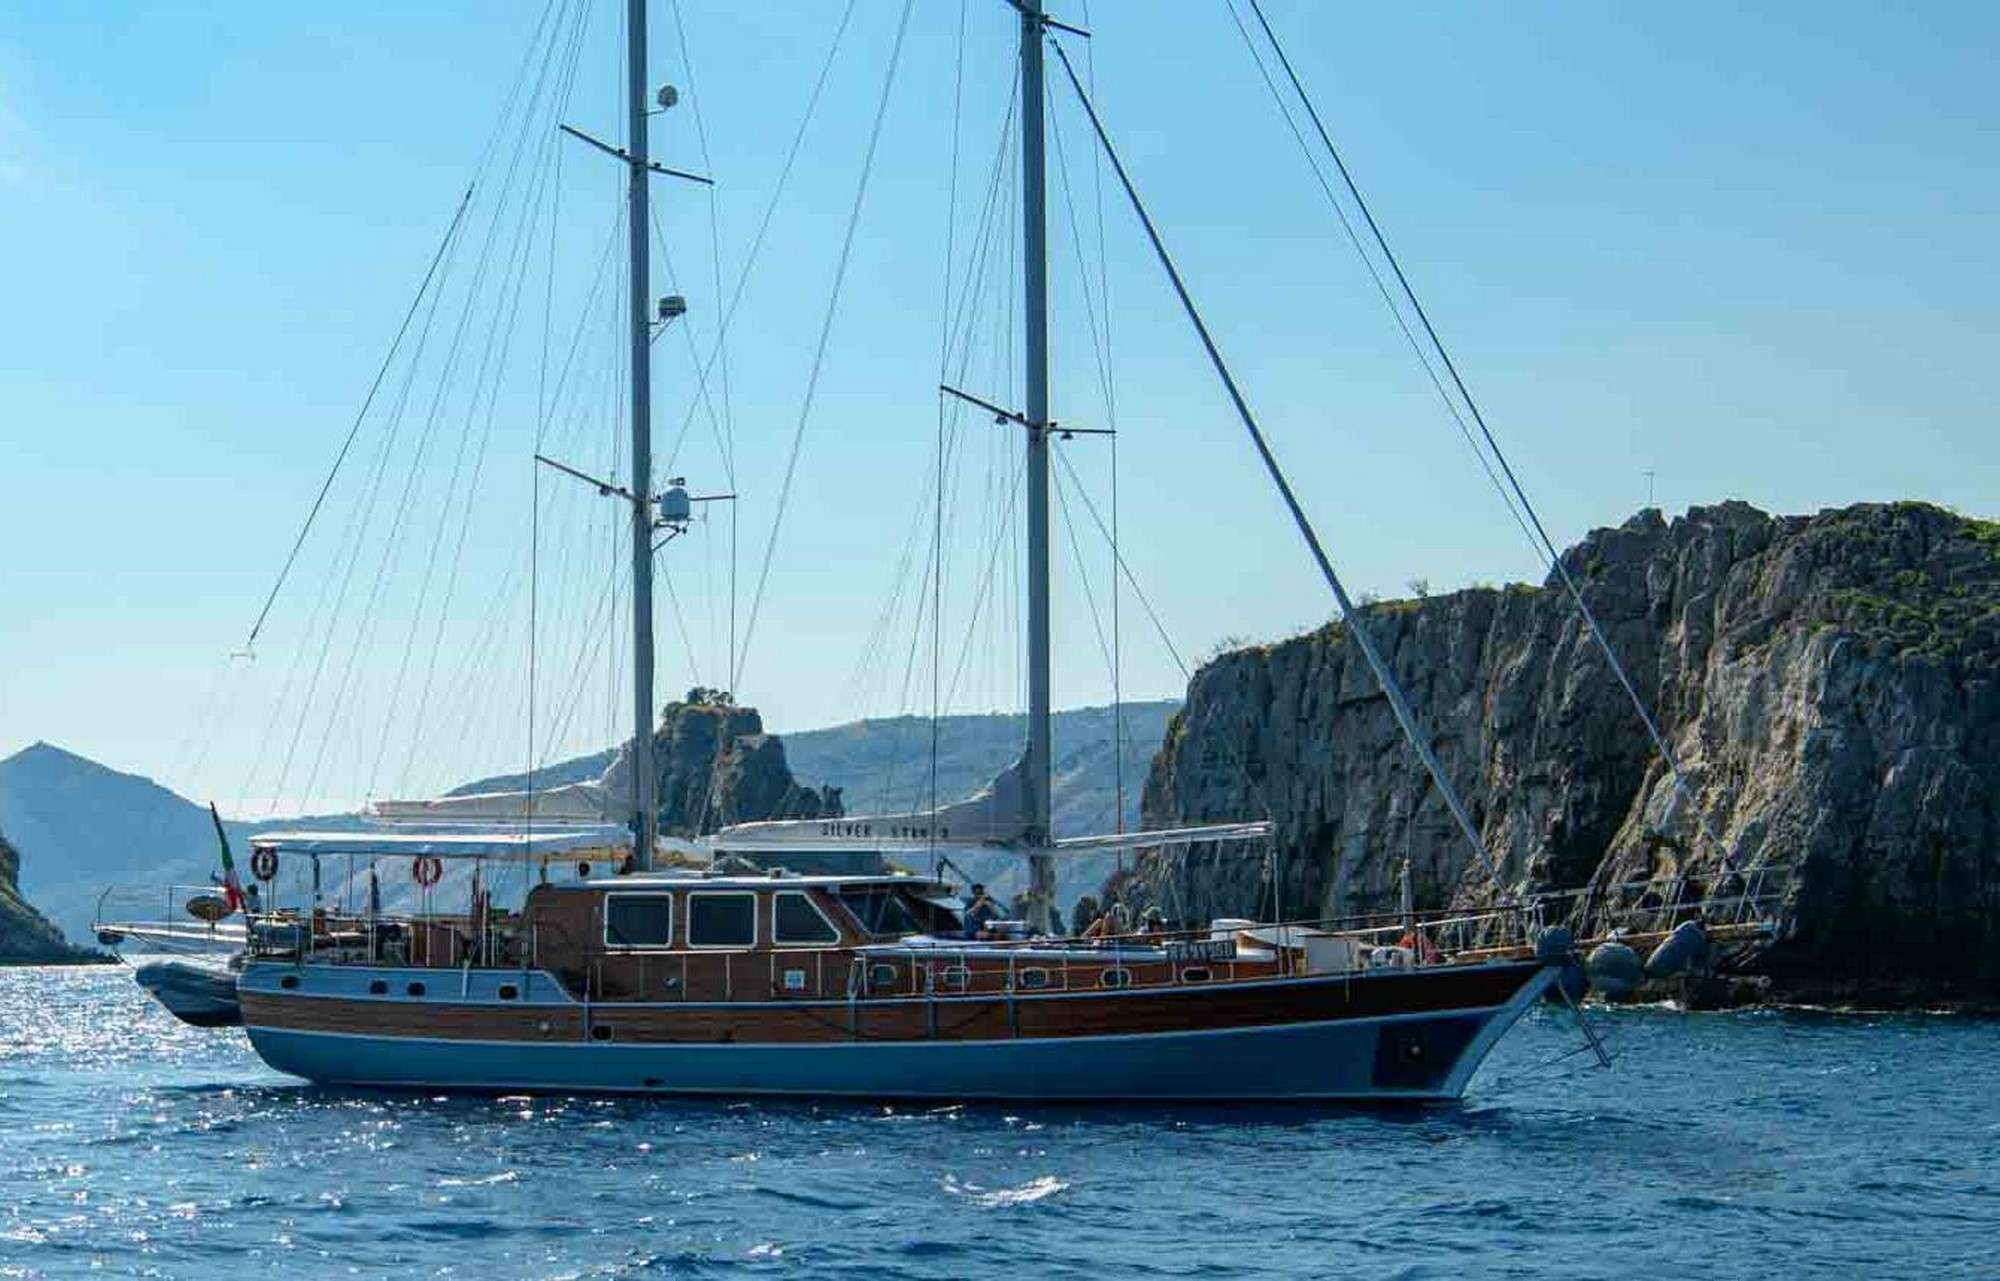 SILVER STAR 2 - Yacht Charter Monaco & Boat hire in Fr. Riviera & Tyrrhenian Sea 1